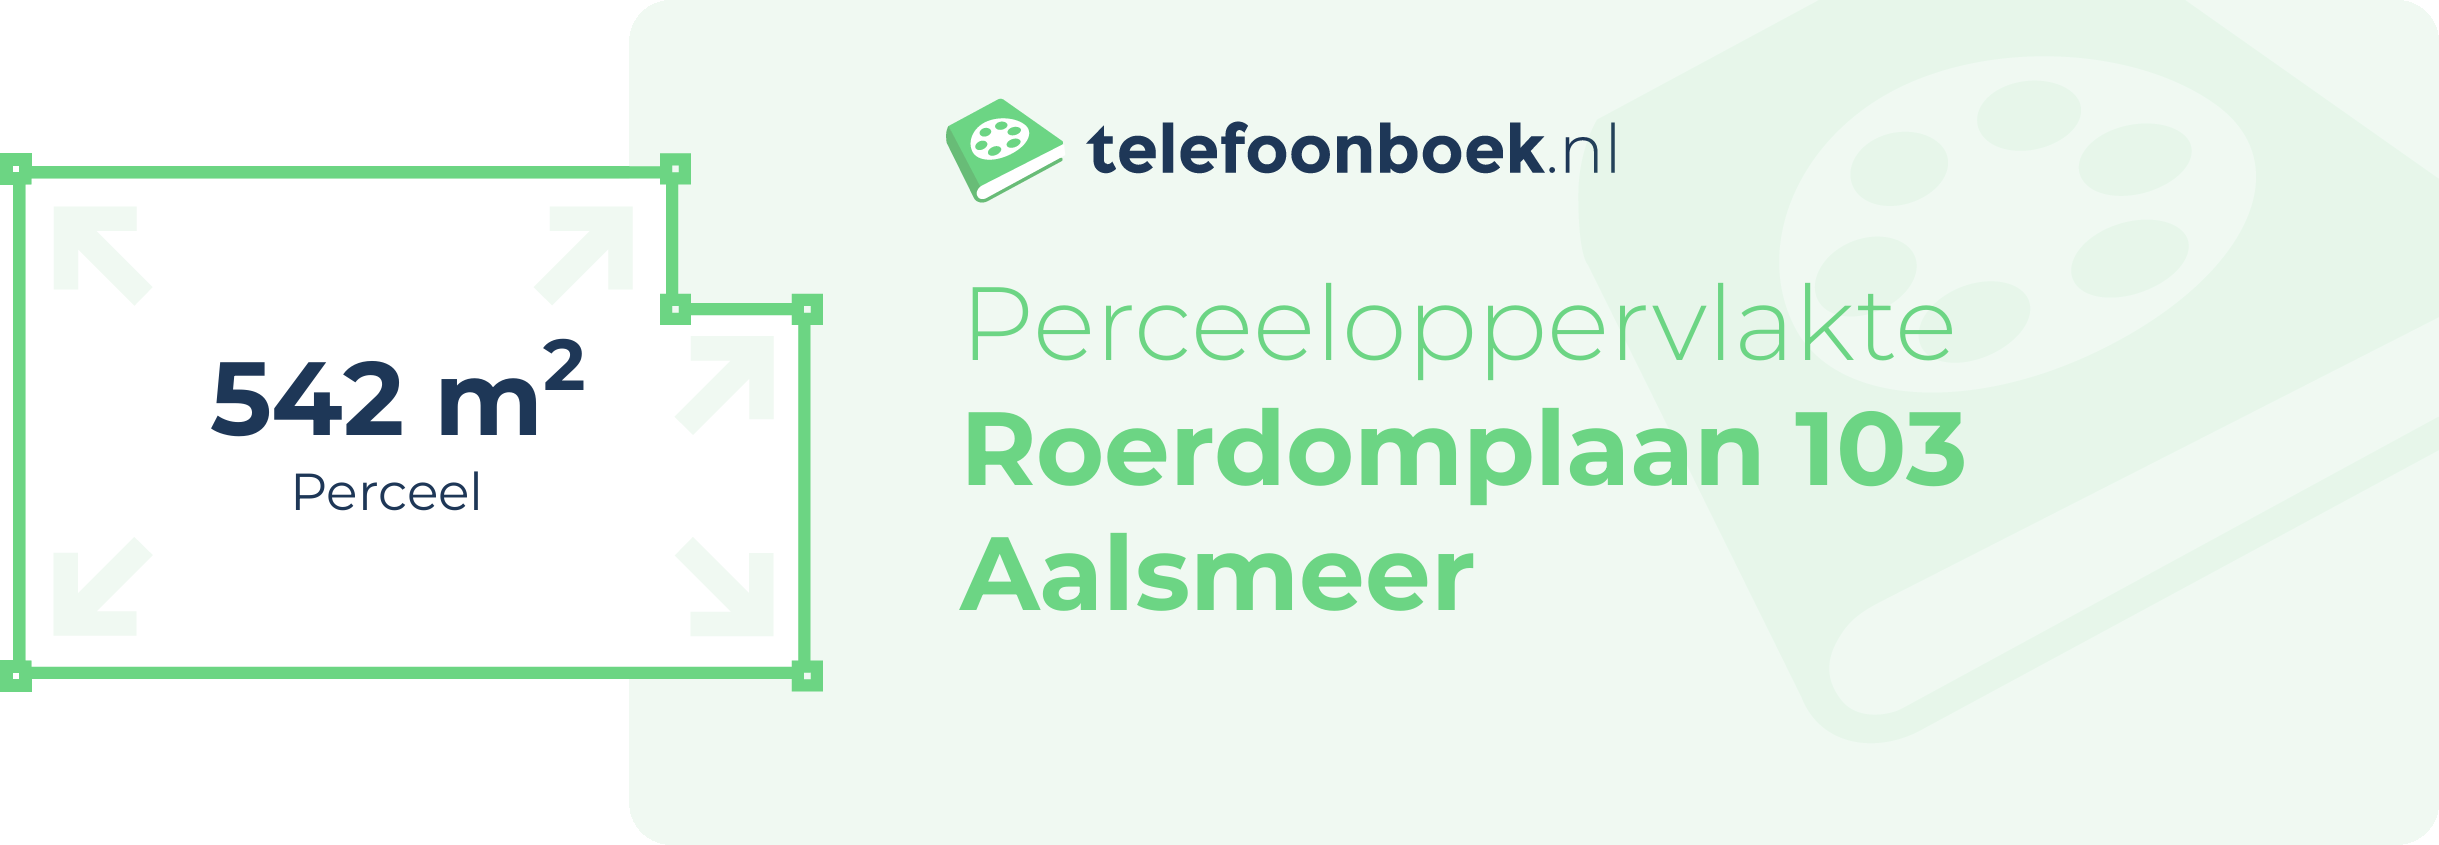 Perceeloppervlakte Roerdomplaan 103 Aalsmeer